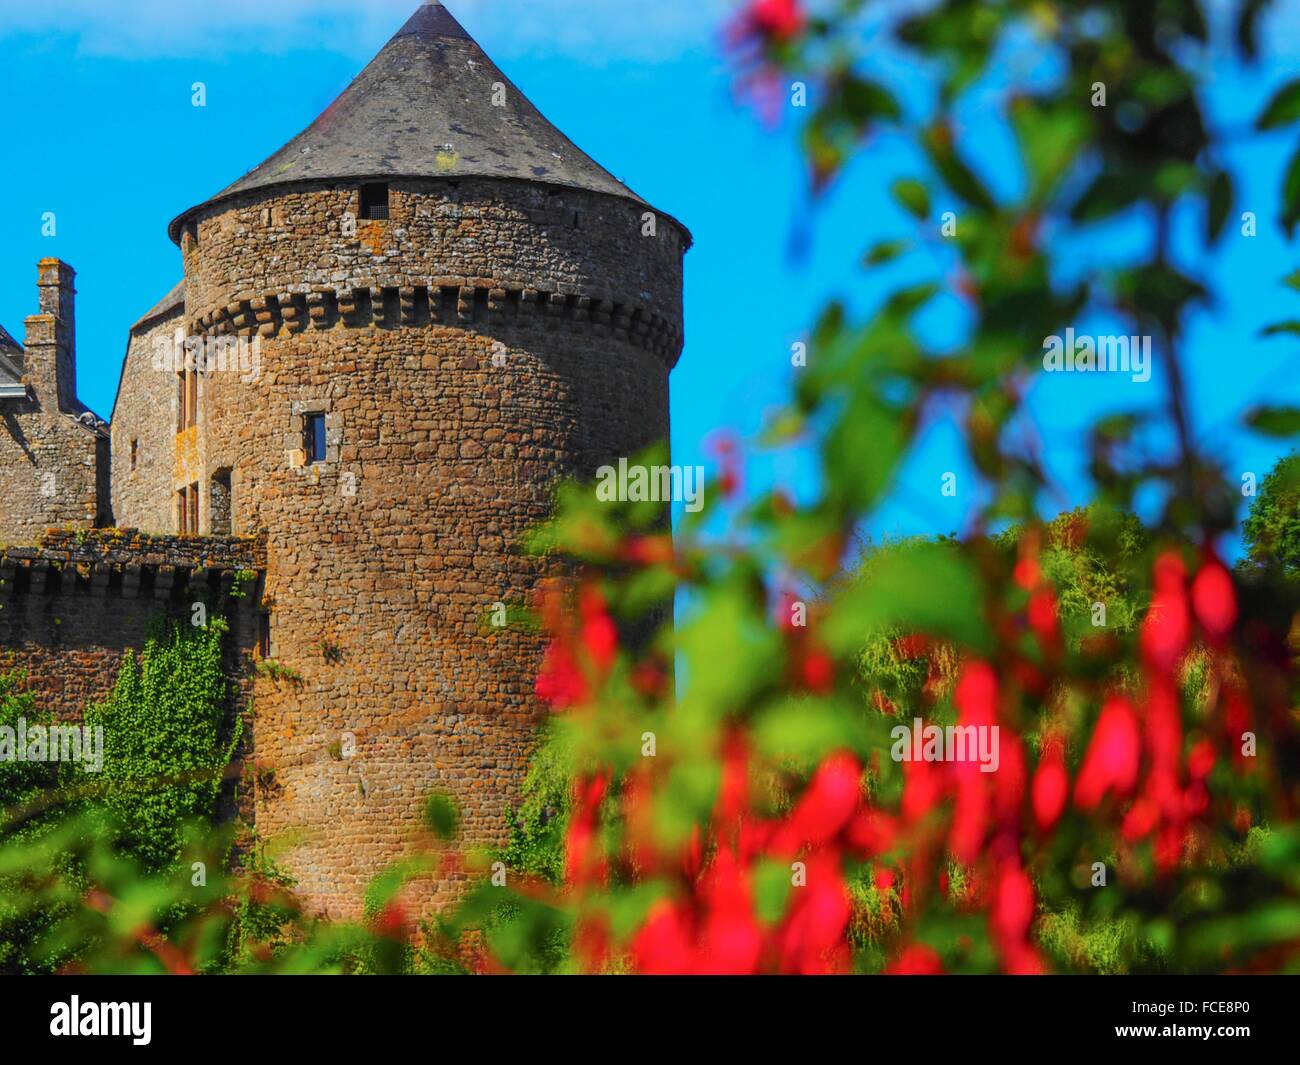 France- Pays de Loire- Mayenne- XII, XIVc. castle of Lassay les Chateaux. Stock Photo